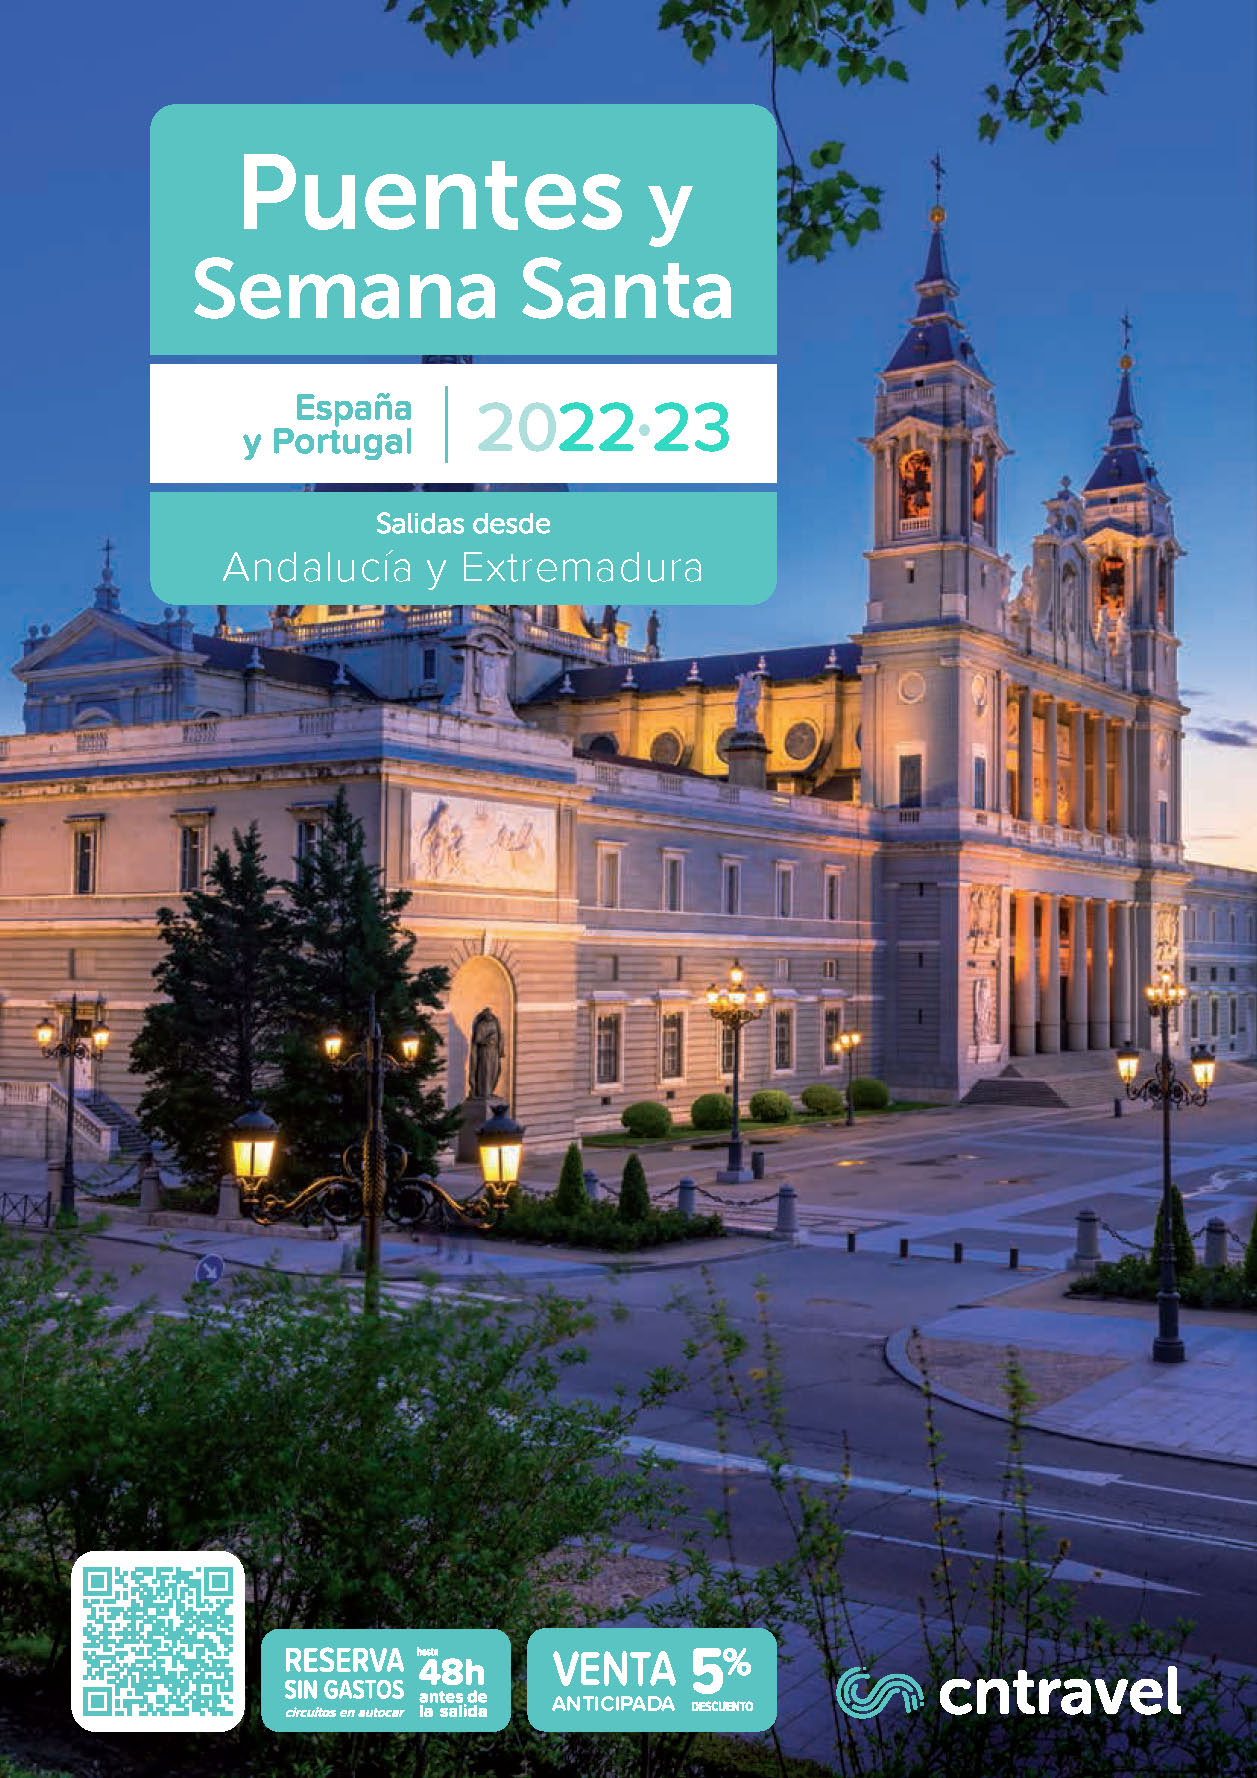 Catalogo CN Travel Viajes en Puentes y Semana Santa 2022-2023 Espana y Portugal salidas desde Andalucia y Extremadura